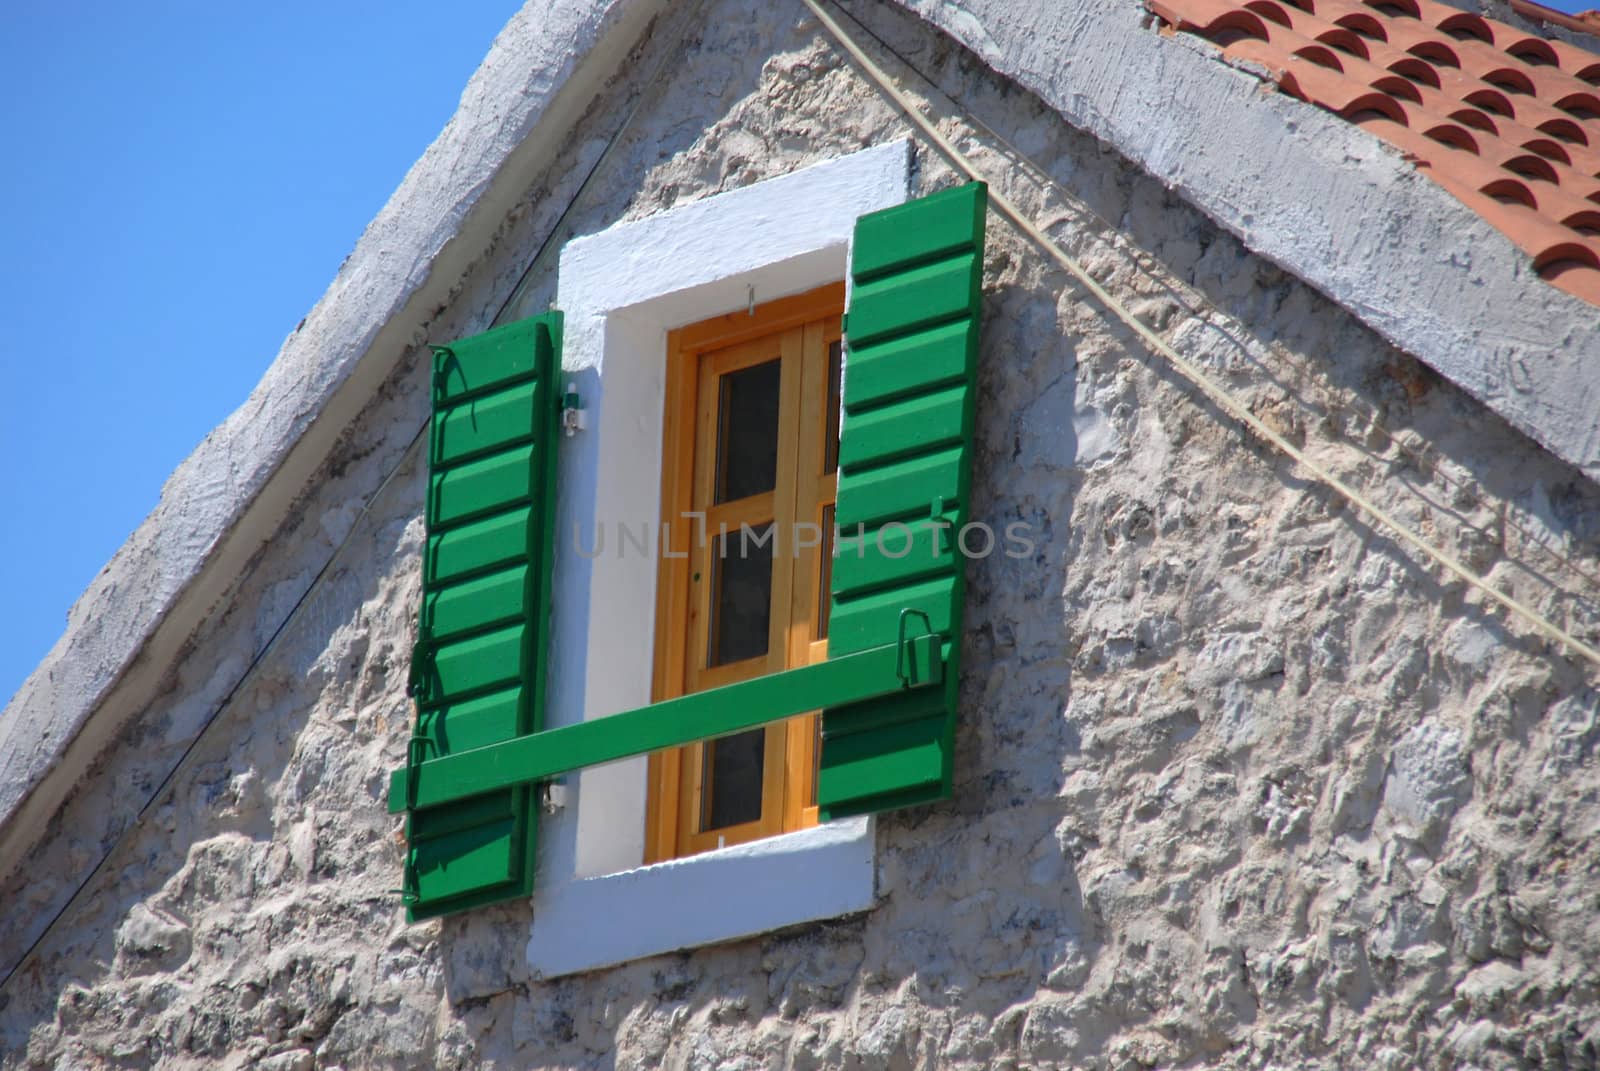 The open green shutter in the window.